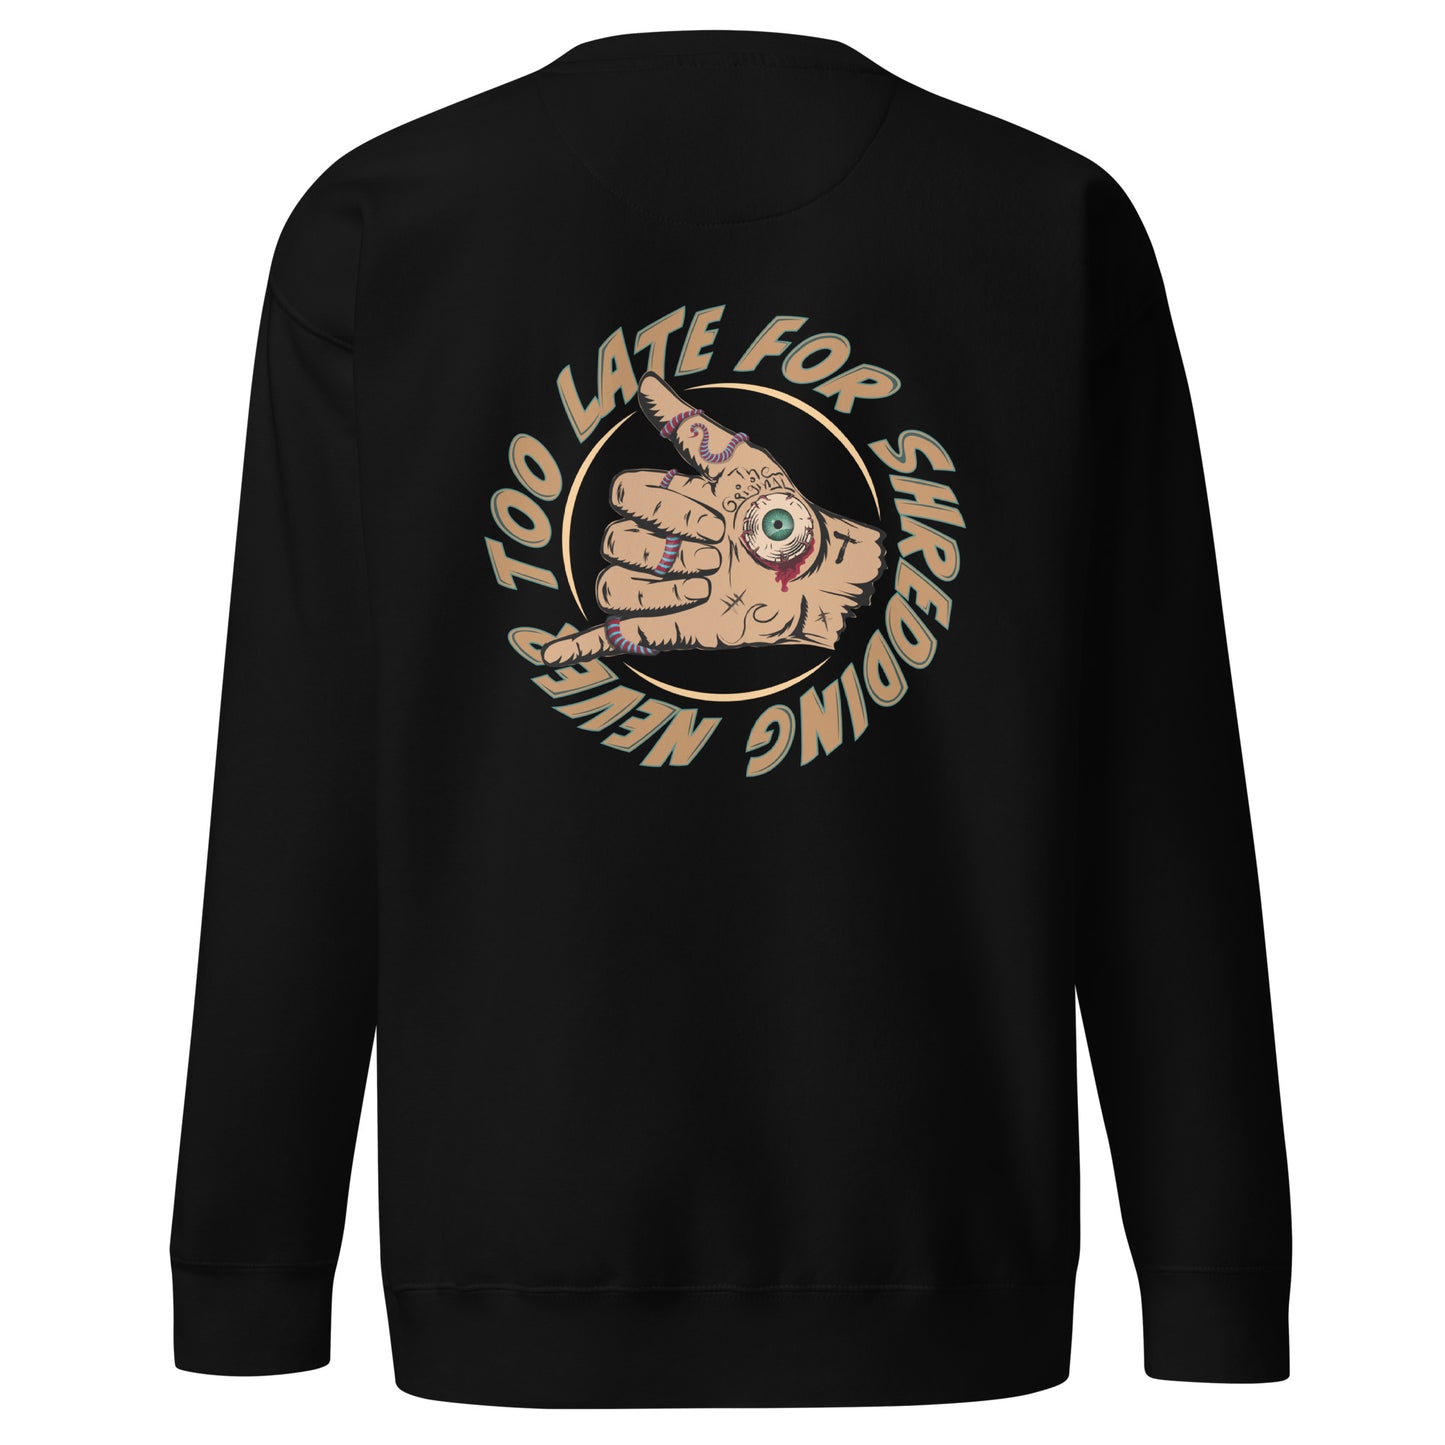 Sweatshirt Never Too Late shaka hand volcom style surfeur, avec le logo Late surfoard, sweat unisex de dos couleur noir